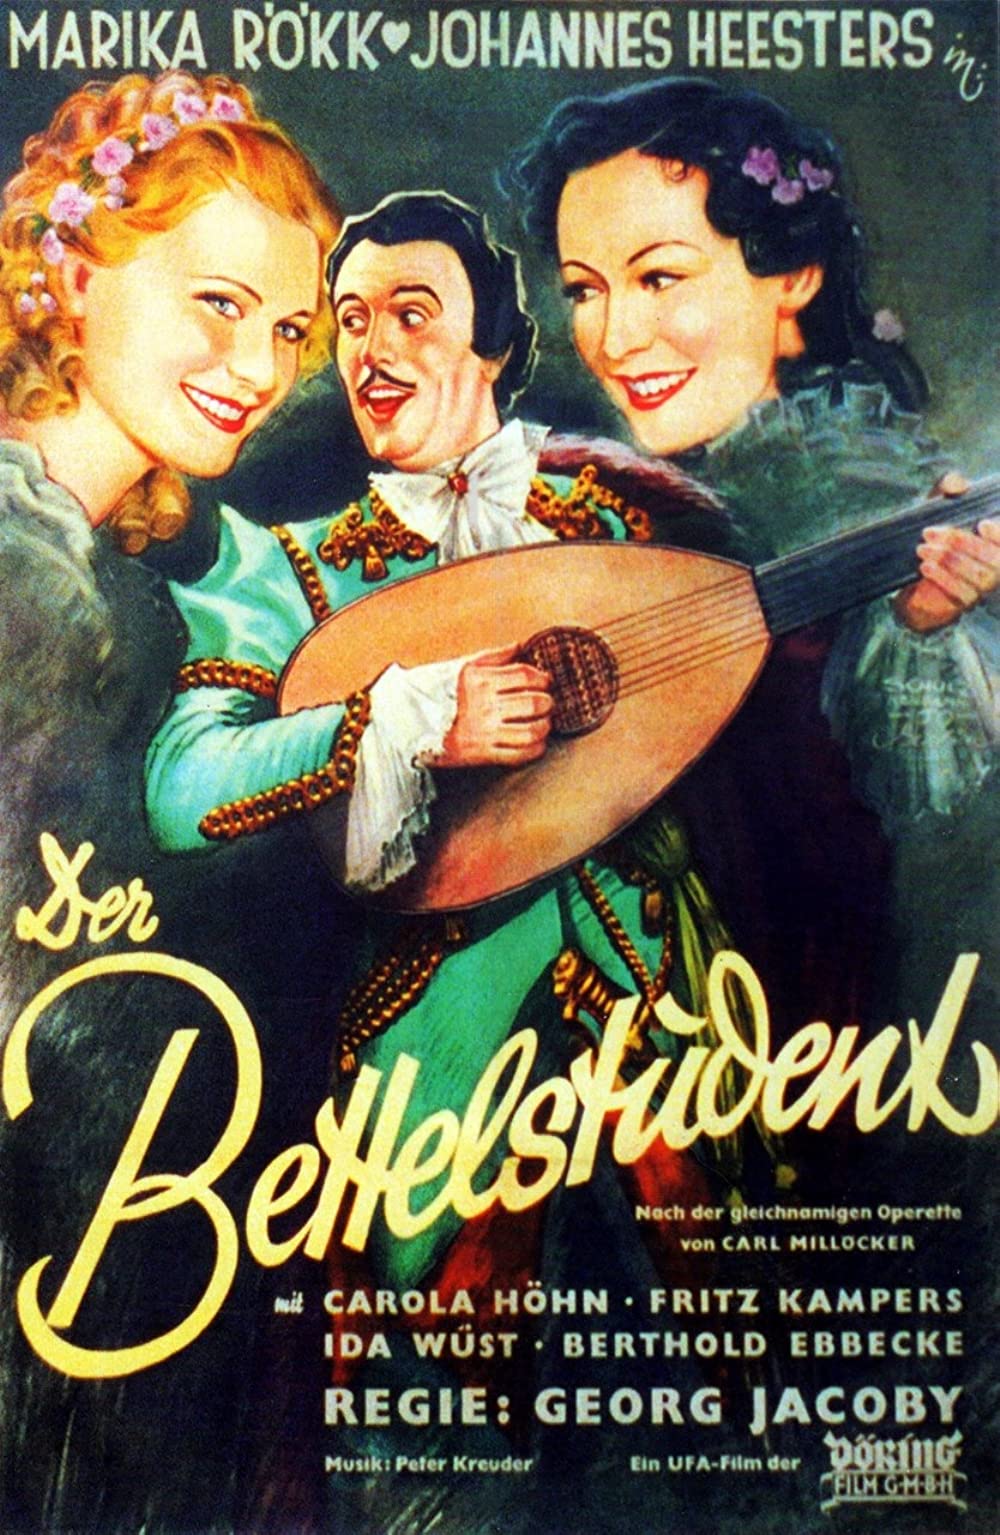 Der Bettelstudent (1936)